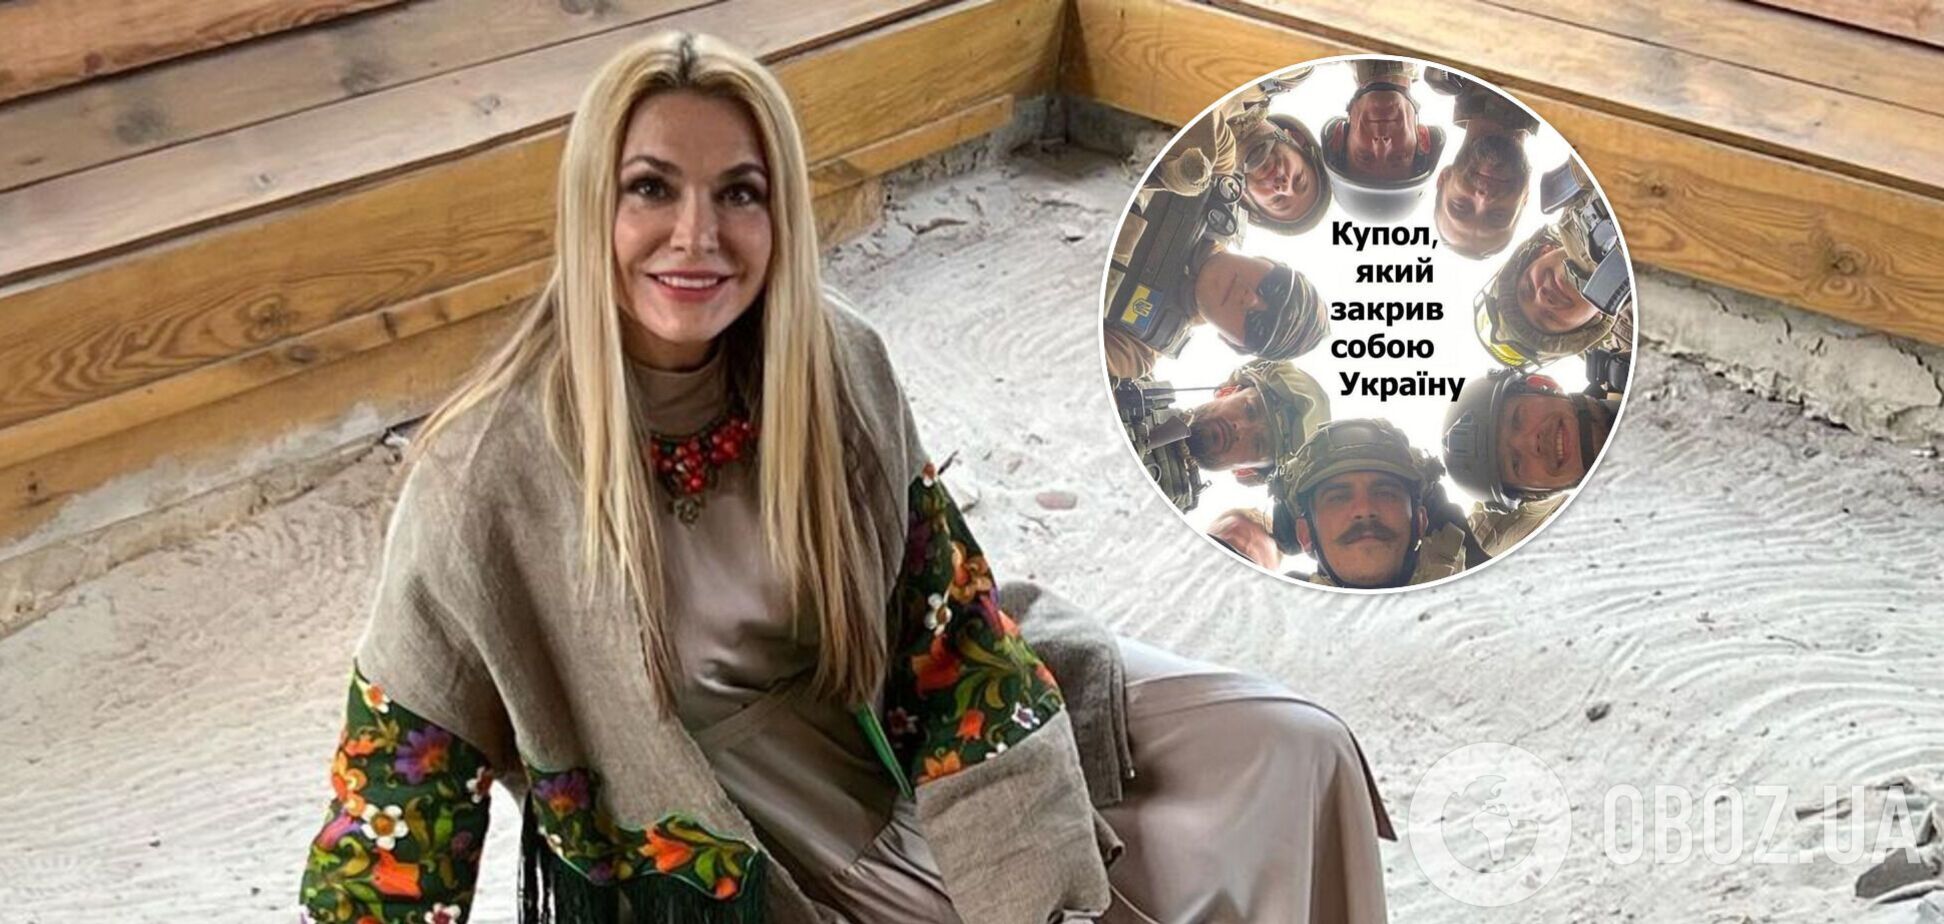 Сумська показала символічний 'купол', який закрив собою всю Україну